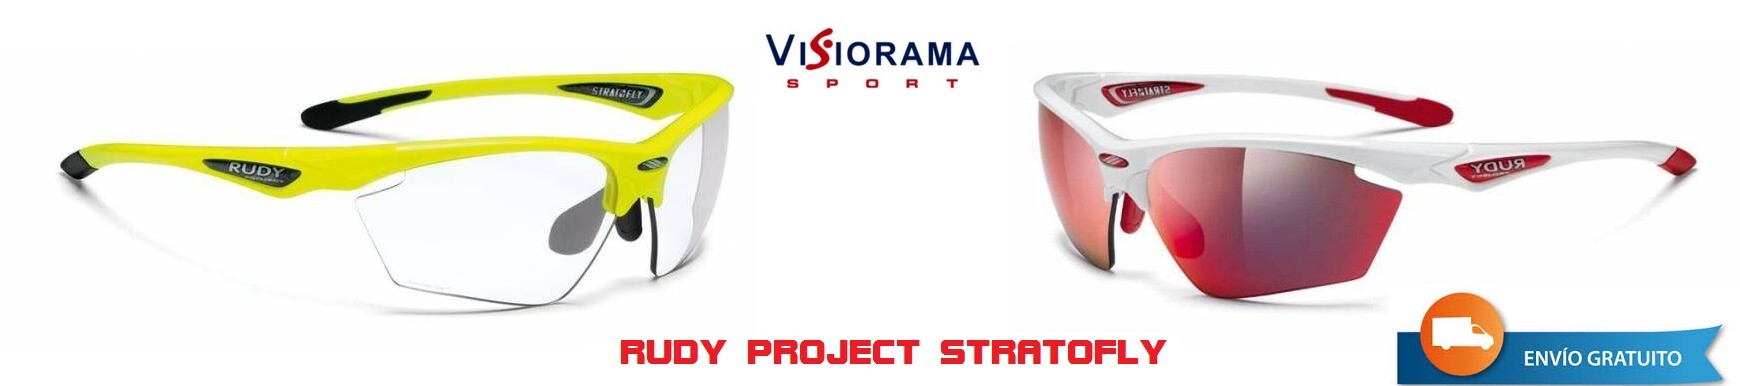 Promoção do Projeto Rudy na VisioramaSport